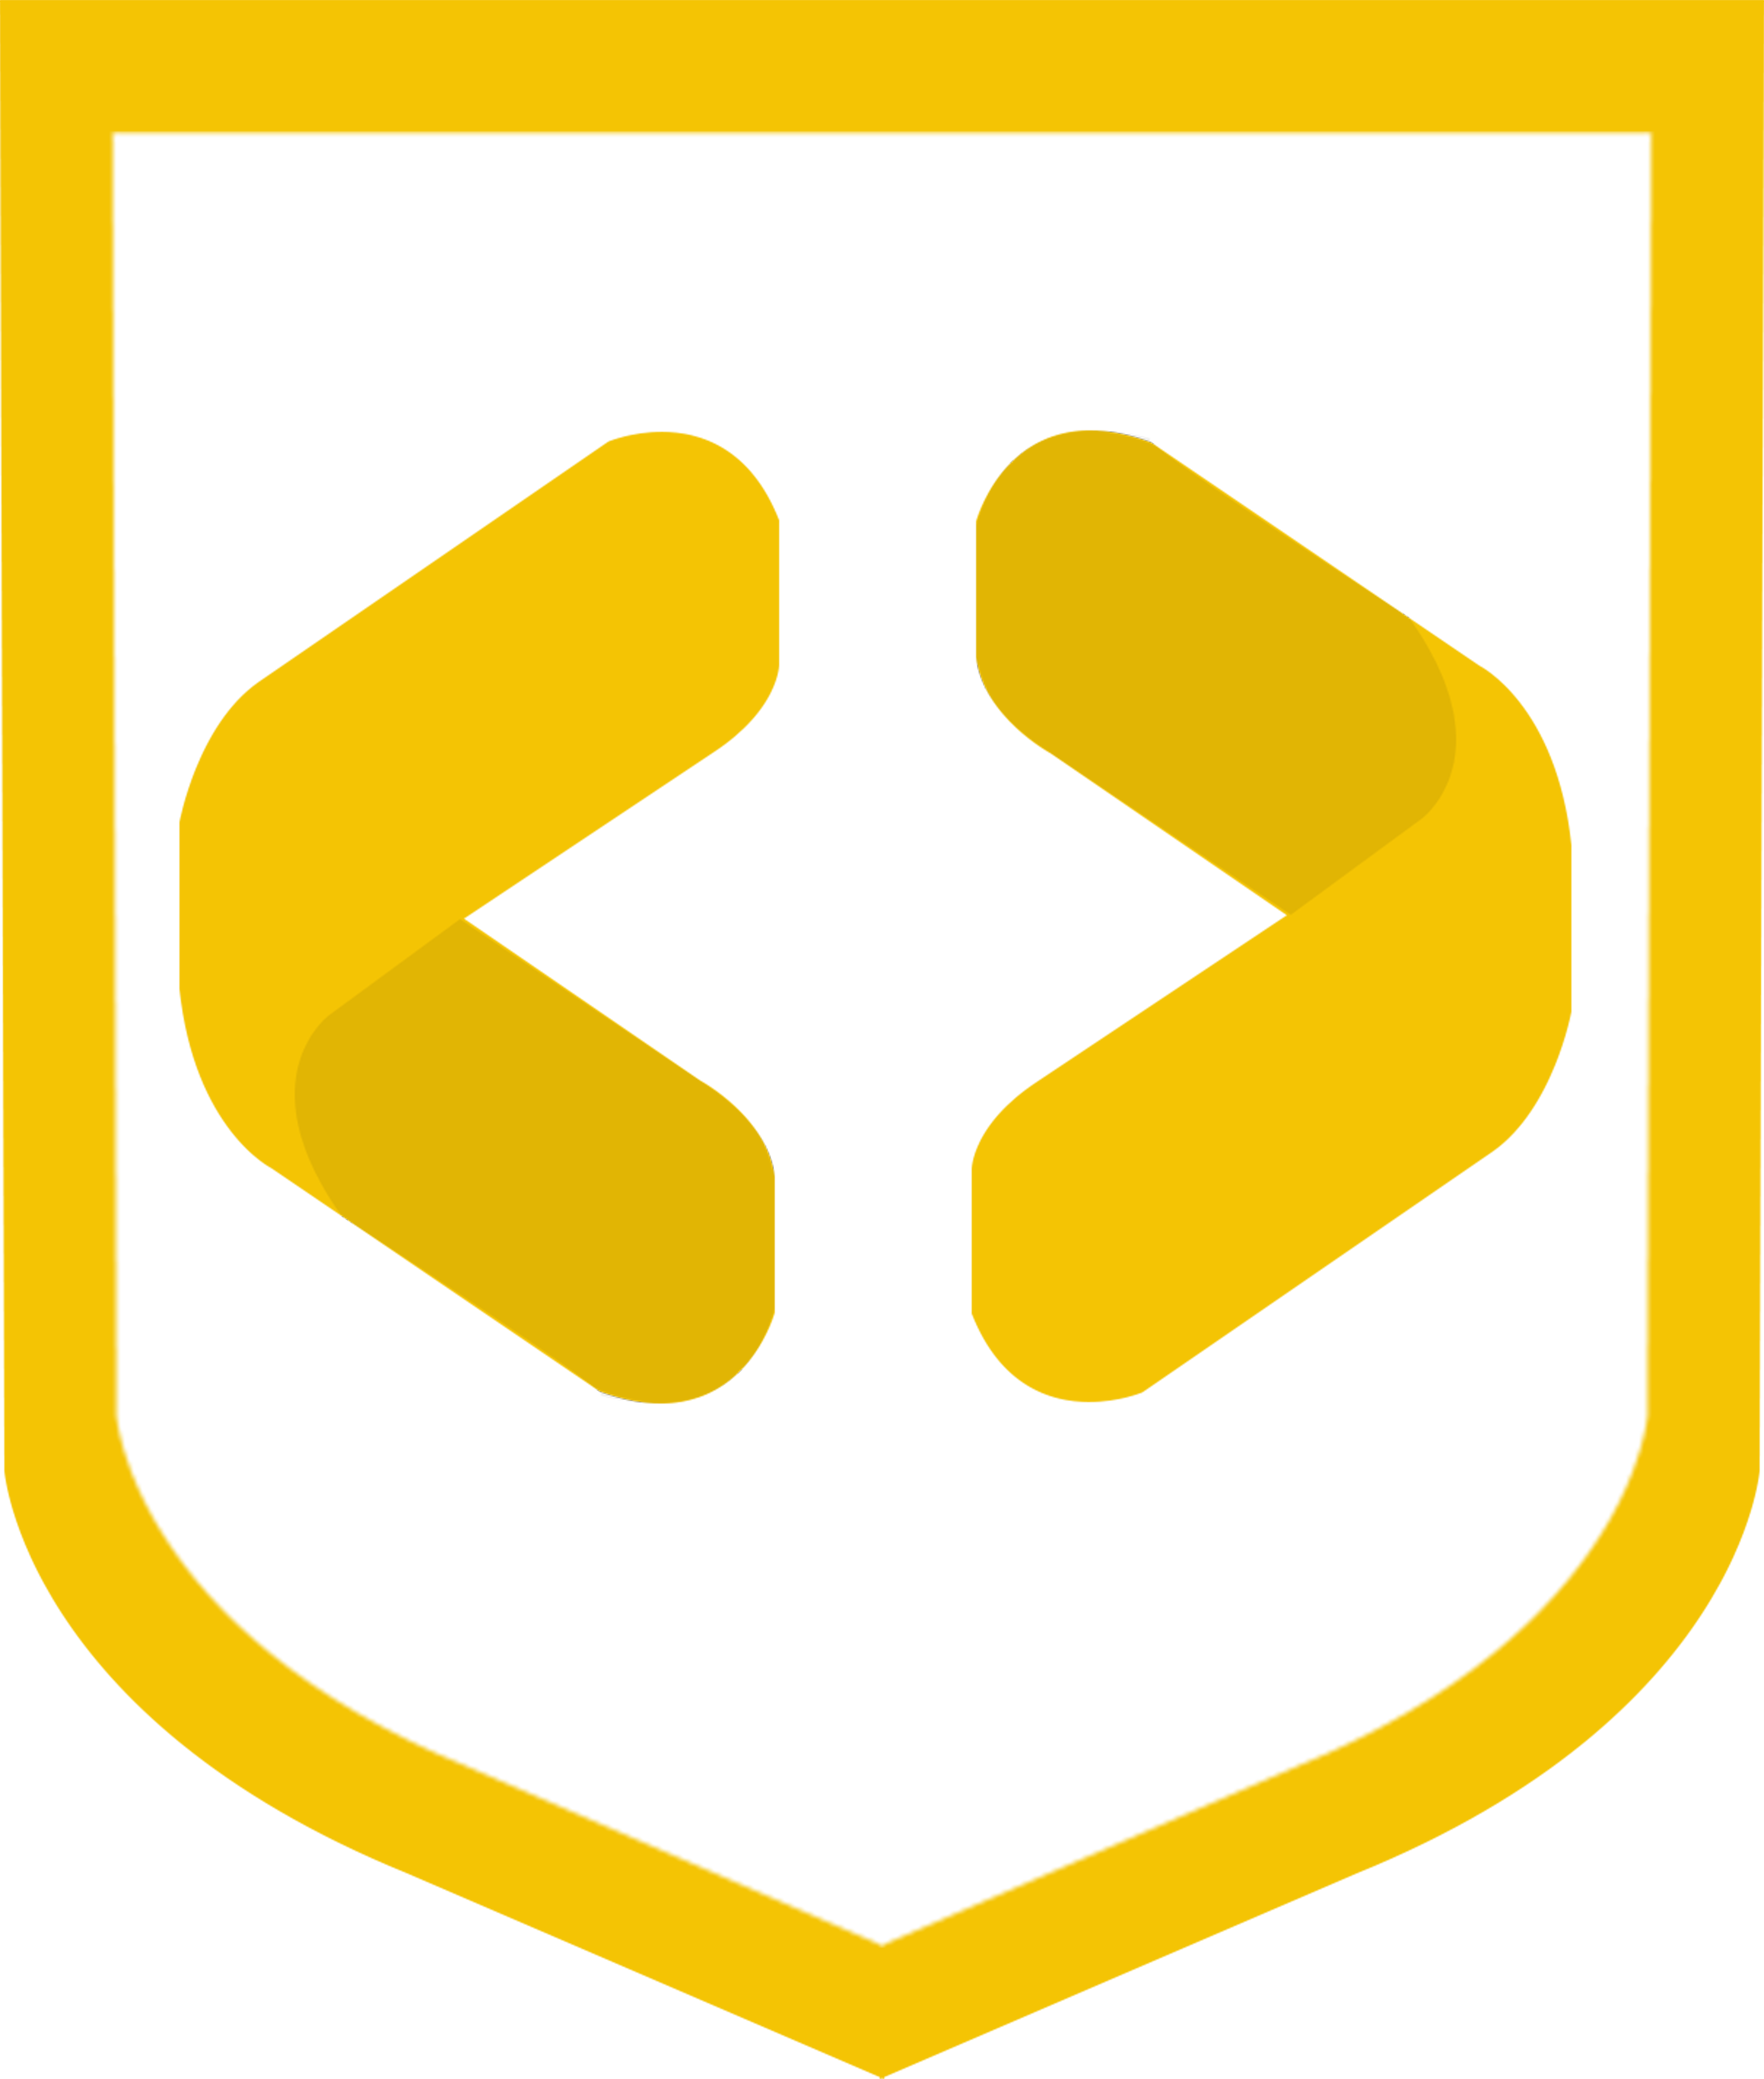 Web Crusaders logo